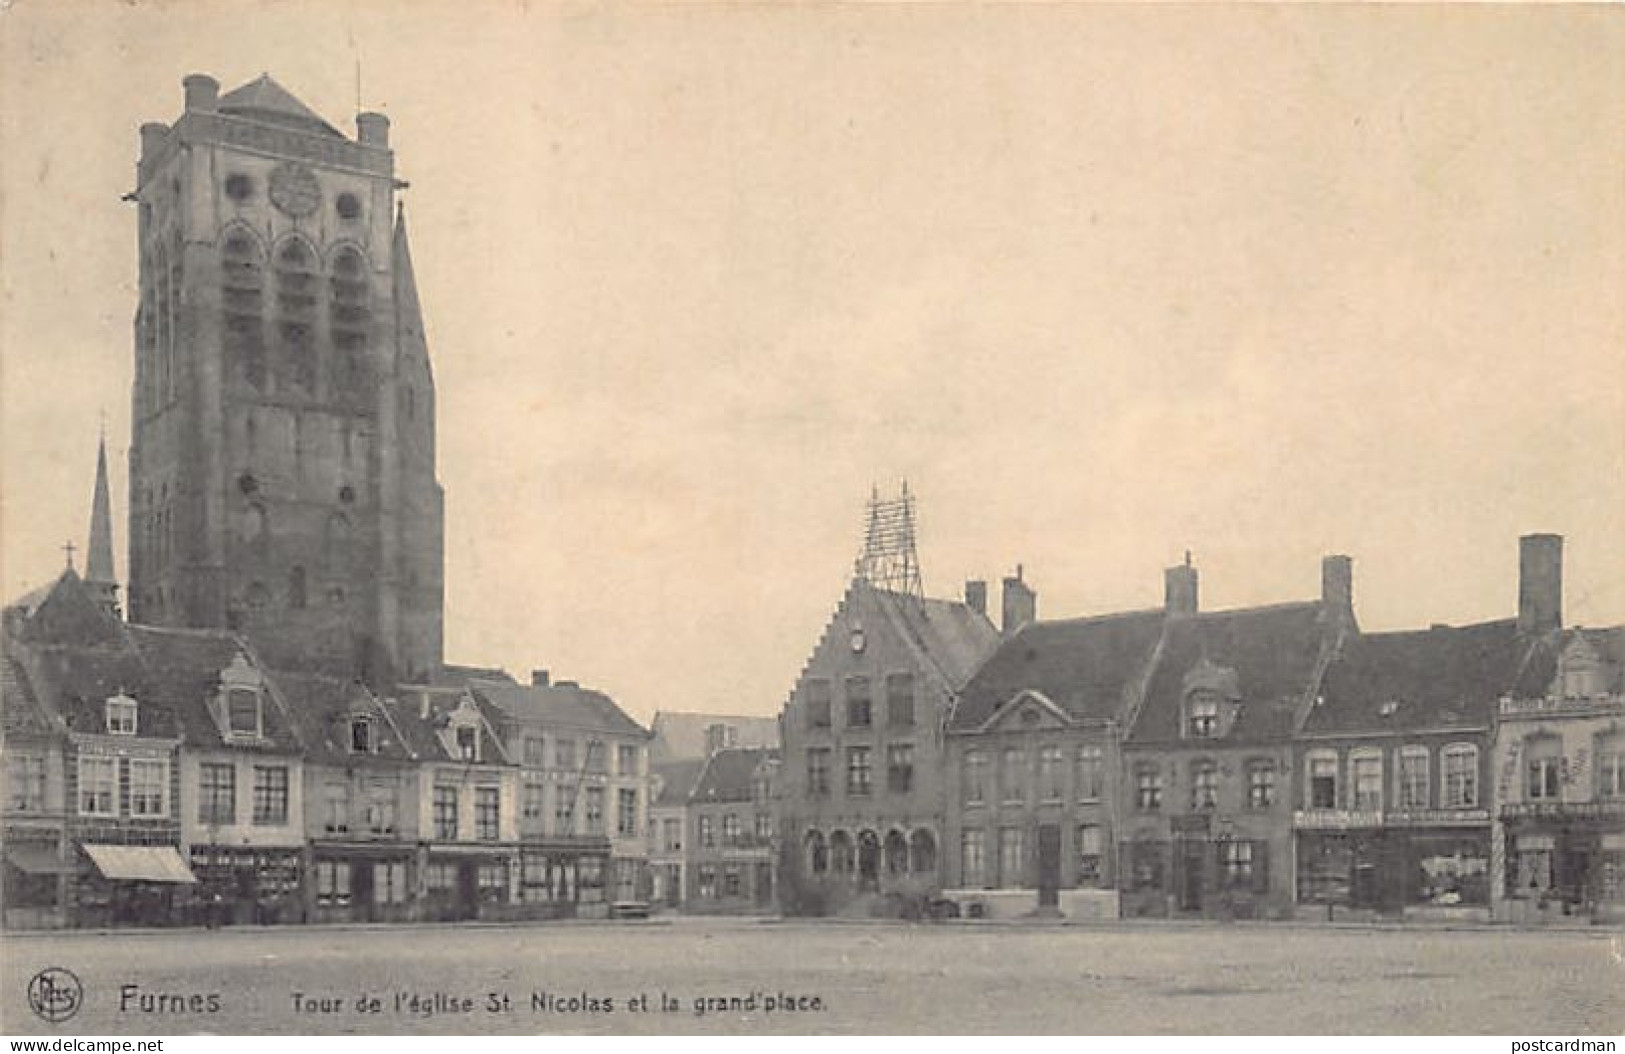 VEURNE (W. Vl.) Toren Van De Sint-Nicolaaskerk En Het Centrale Plein - Uitg. P. Van De Venne 10 - Veurne